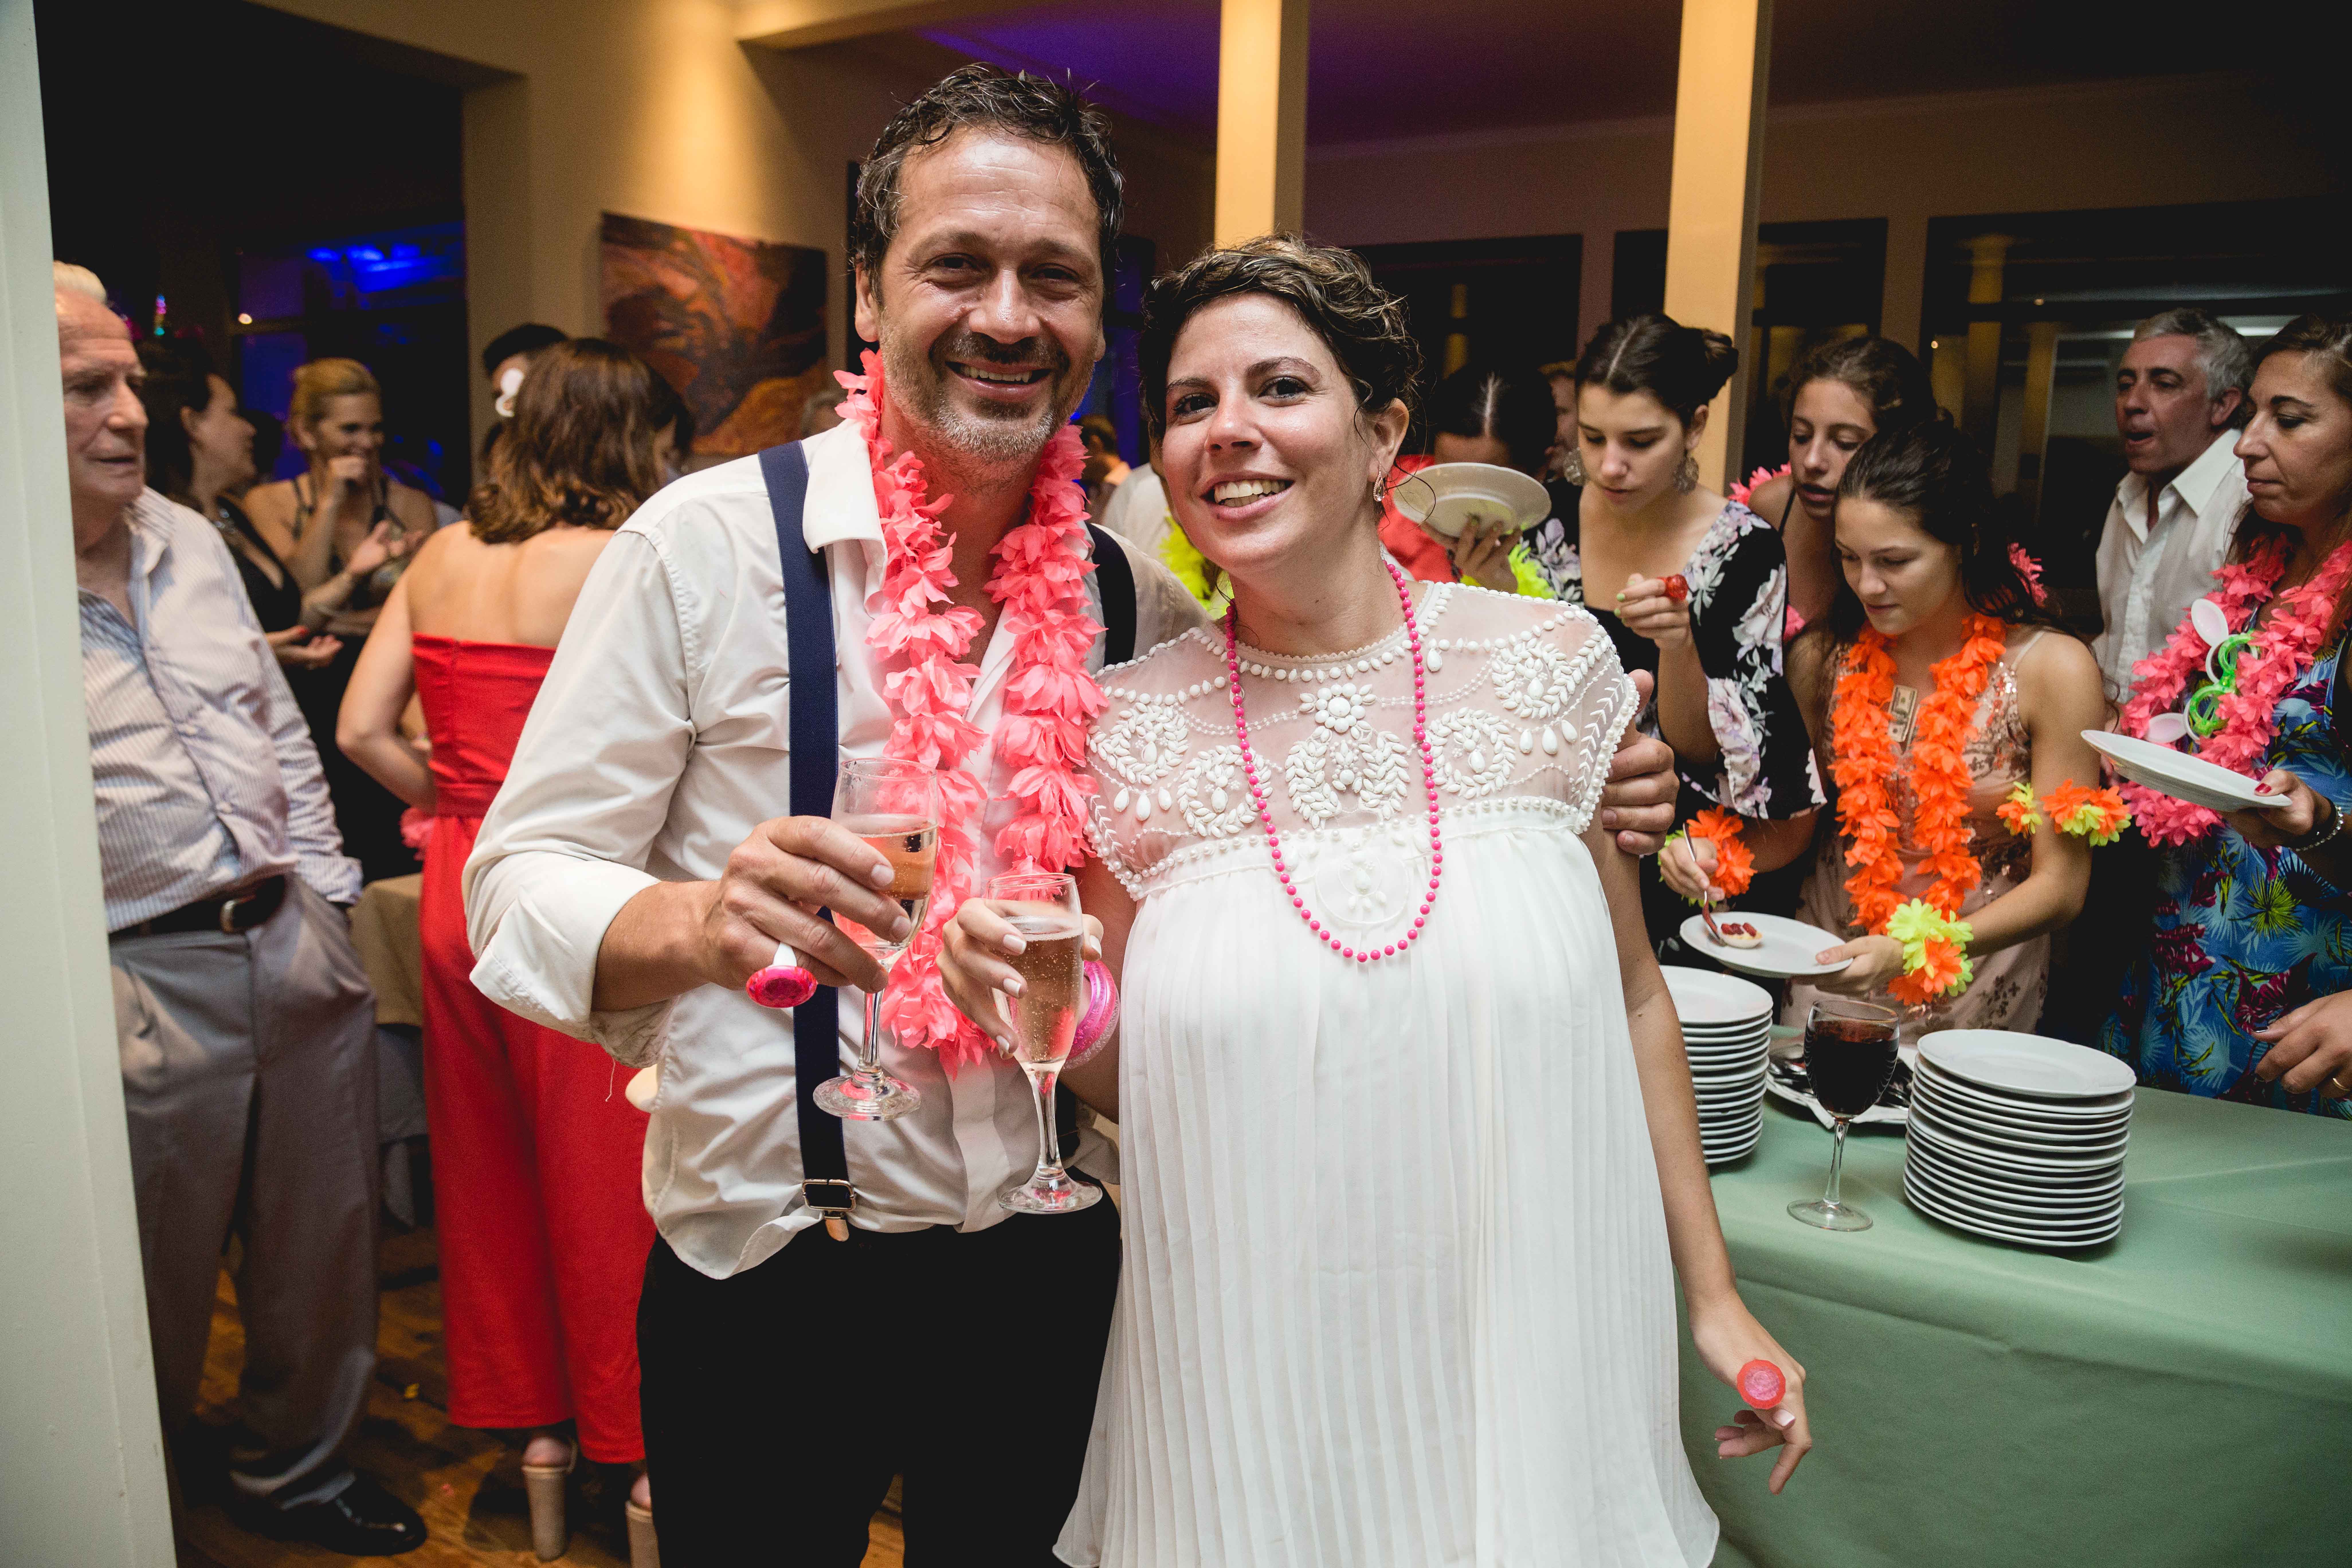 Fotos de la boda de Vicky y Fer en Rosario Realizadas por Bucle Fotografias Flor Bosio y Caro Clerici